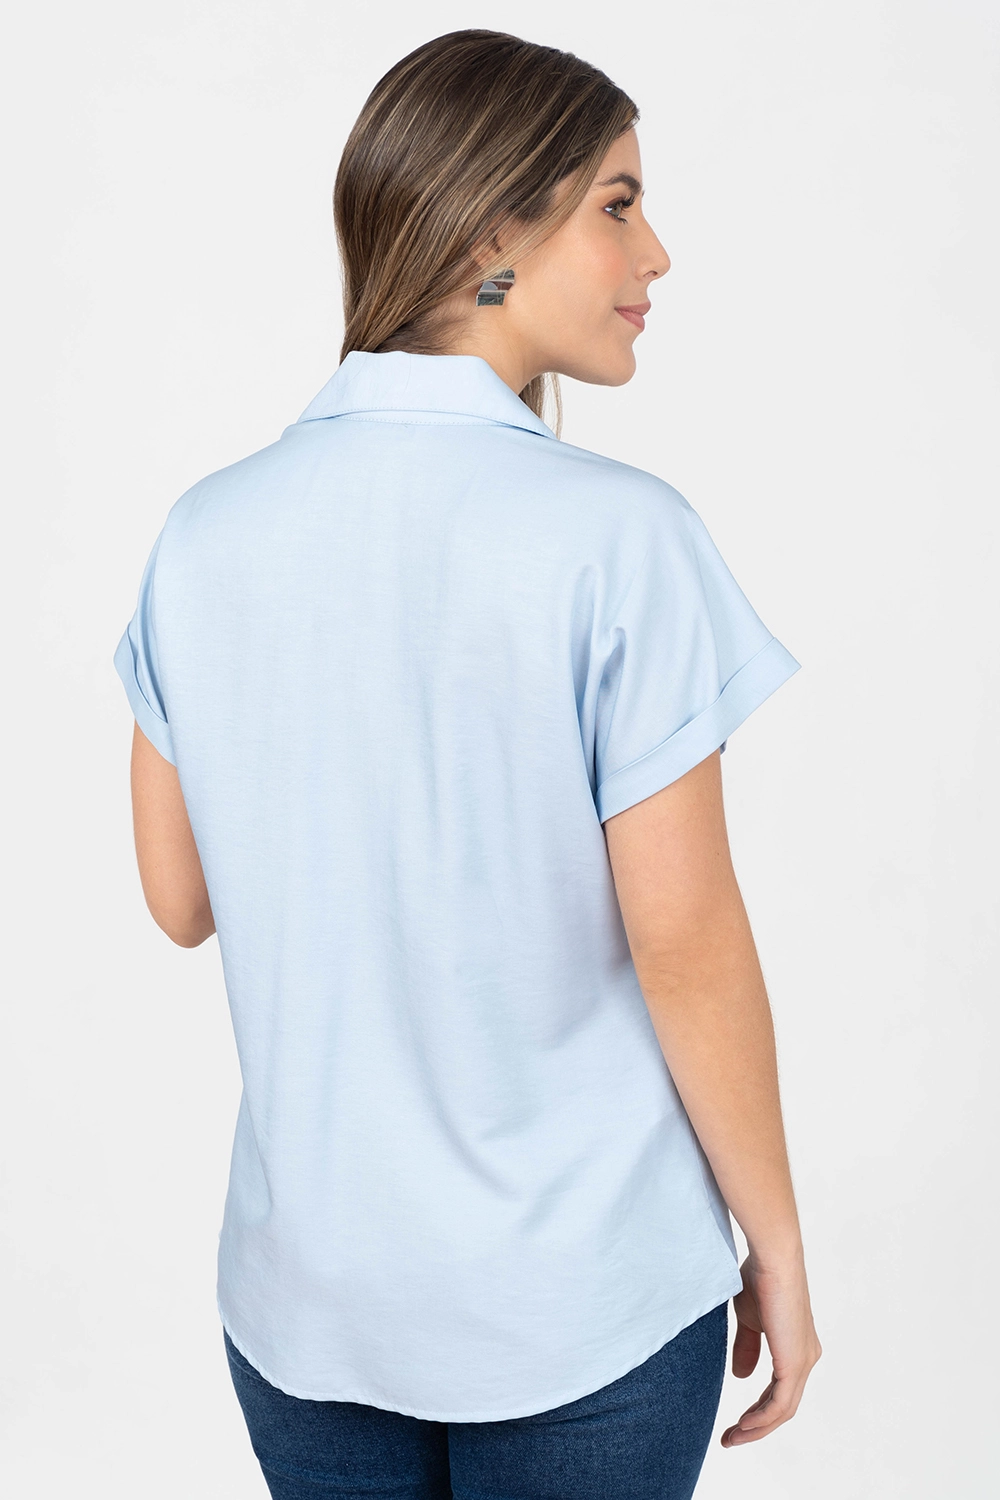 Blusa manga corta con guardapolvo, cuello sport y escote en V. Azul claro talla 12